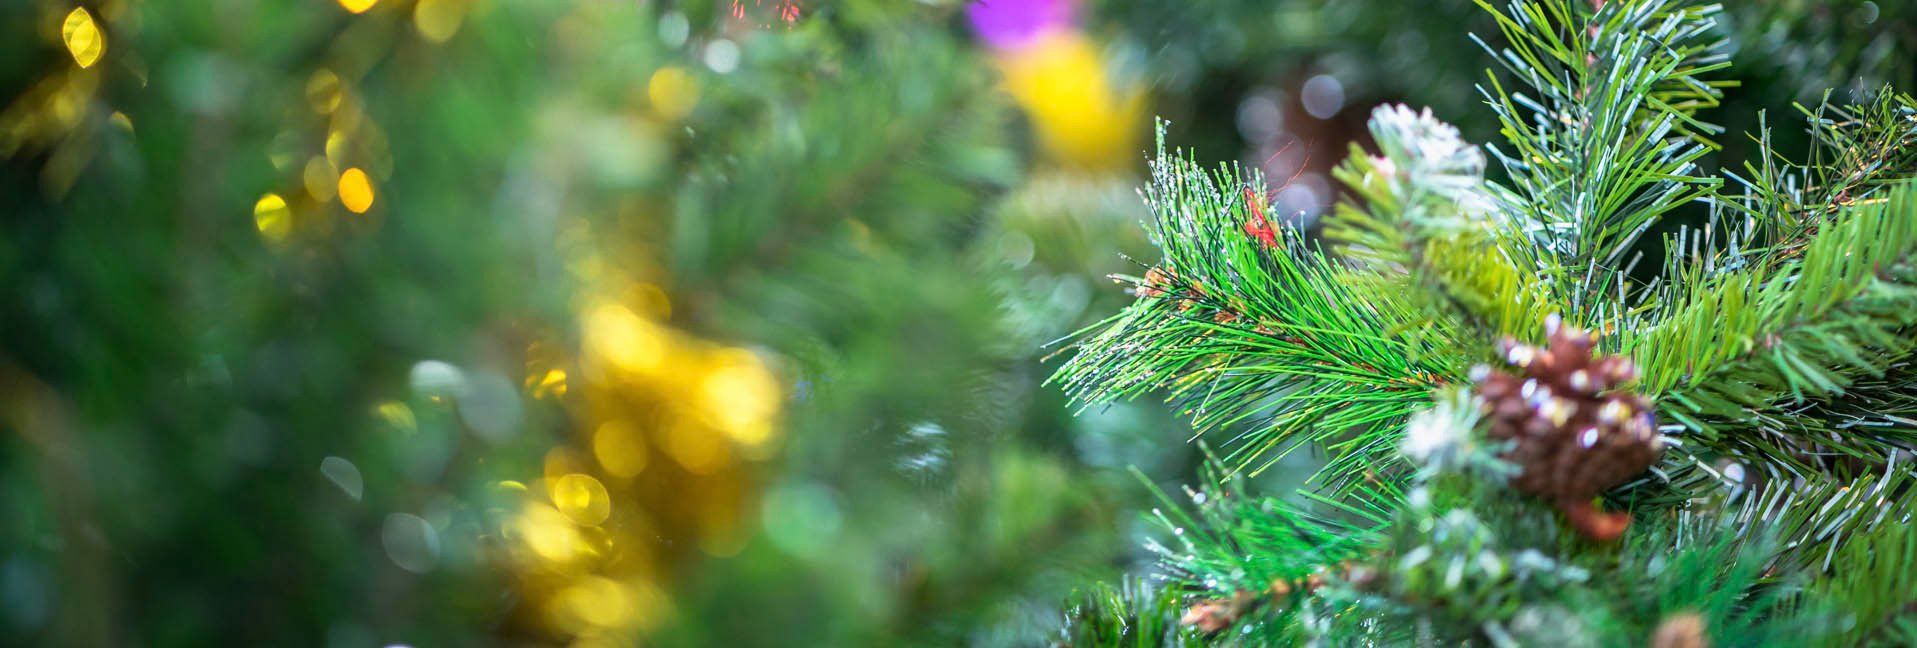 Six tips to keep your Christmas tree fresh all season